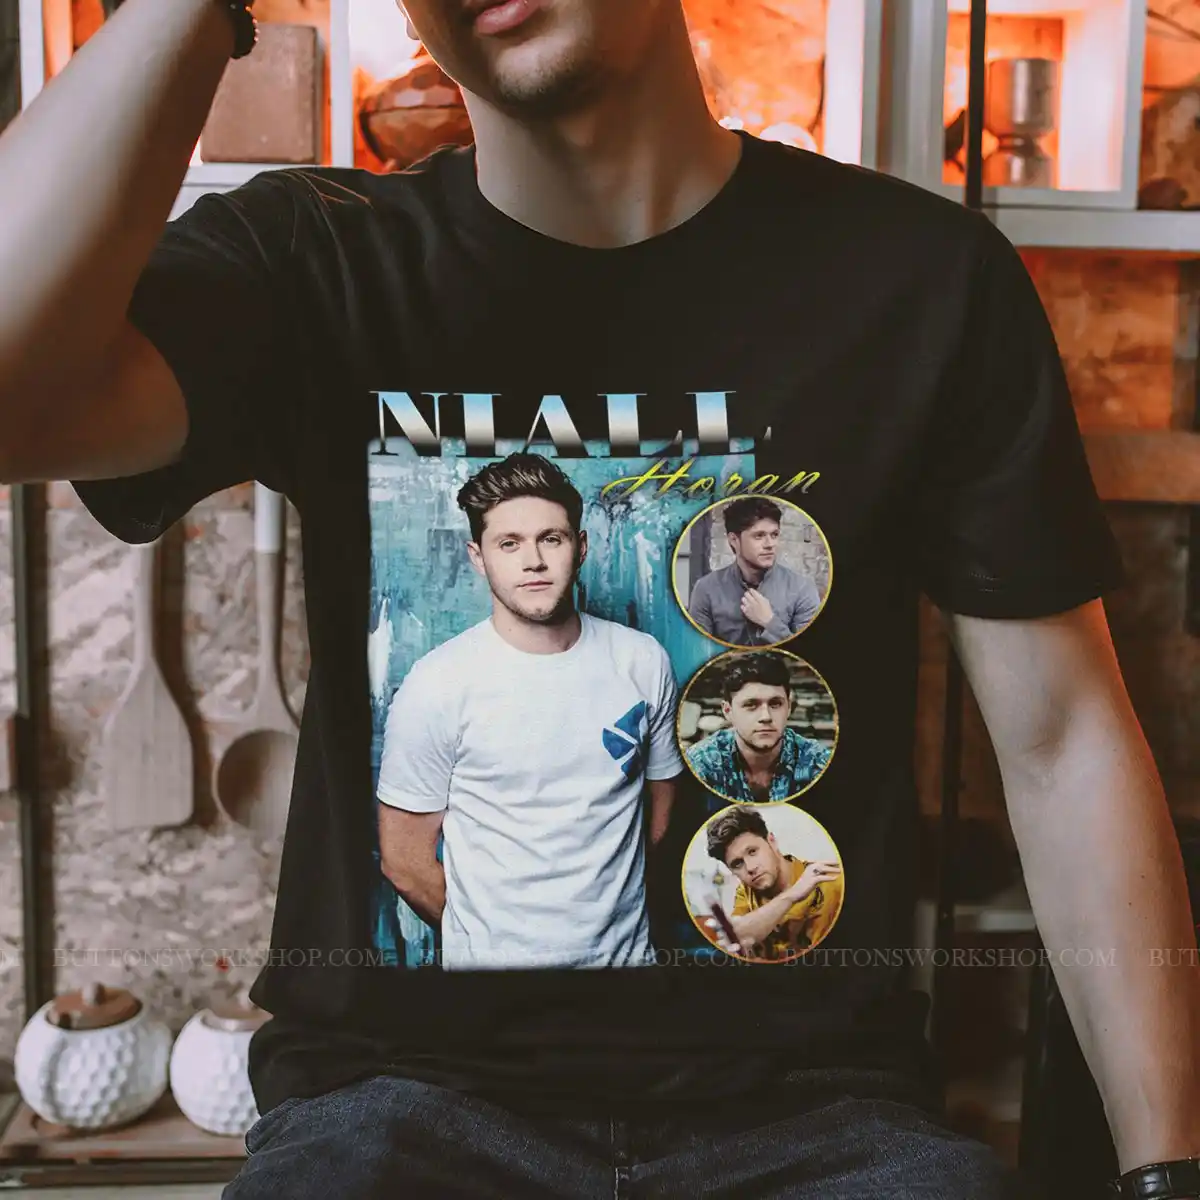 Niall Horan Shirt Unisex Tshirt